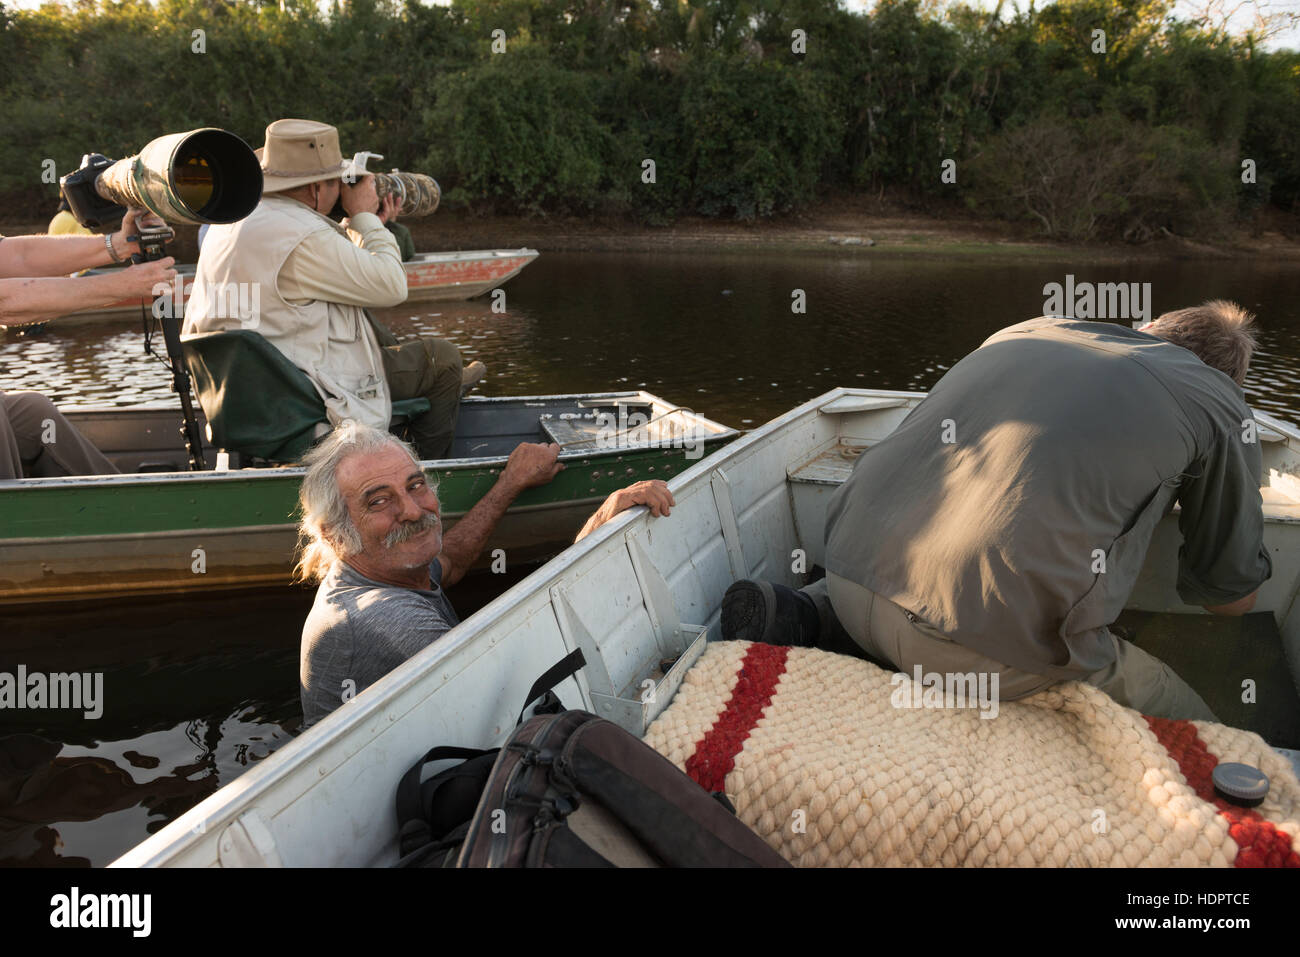 Eco turisti fotografare una Jaguar in Sud Pantanal mentre una guida locale si sforza di mantenere le barche in posizione. Foto Stock